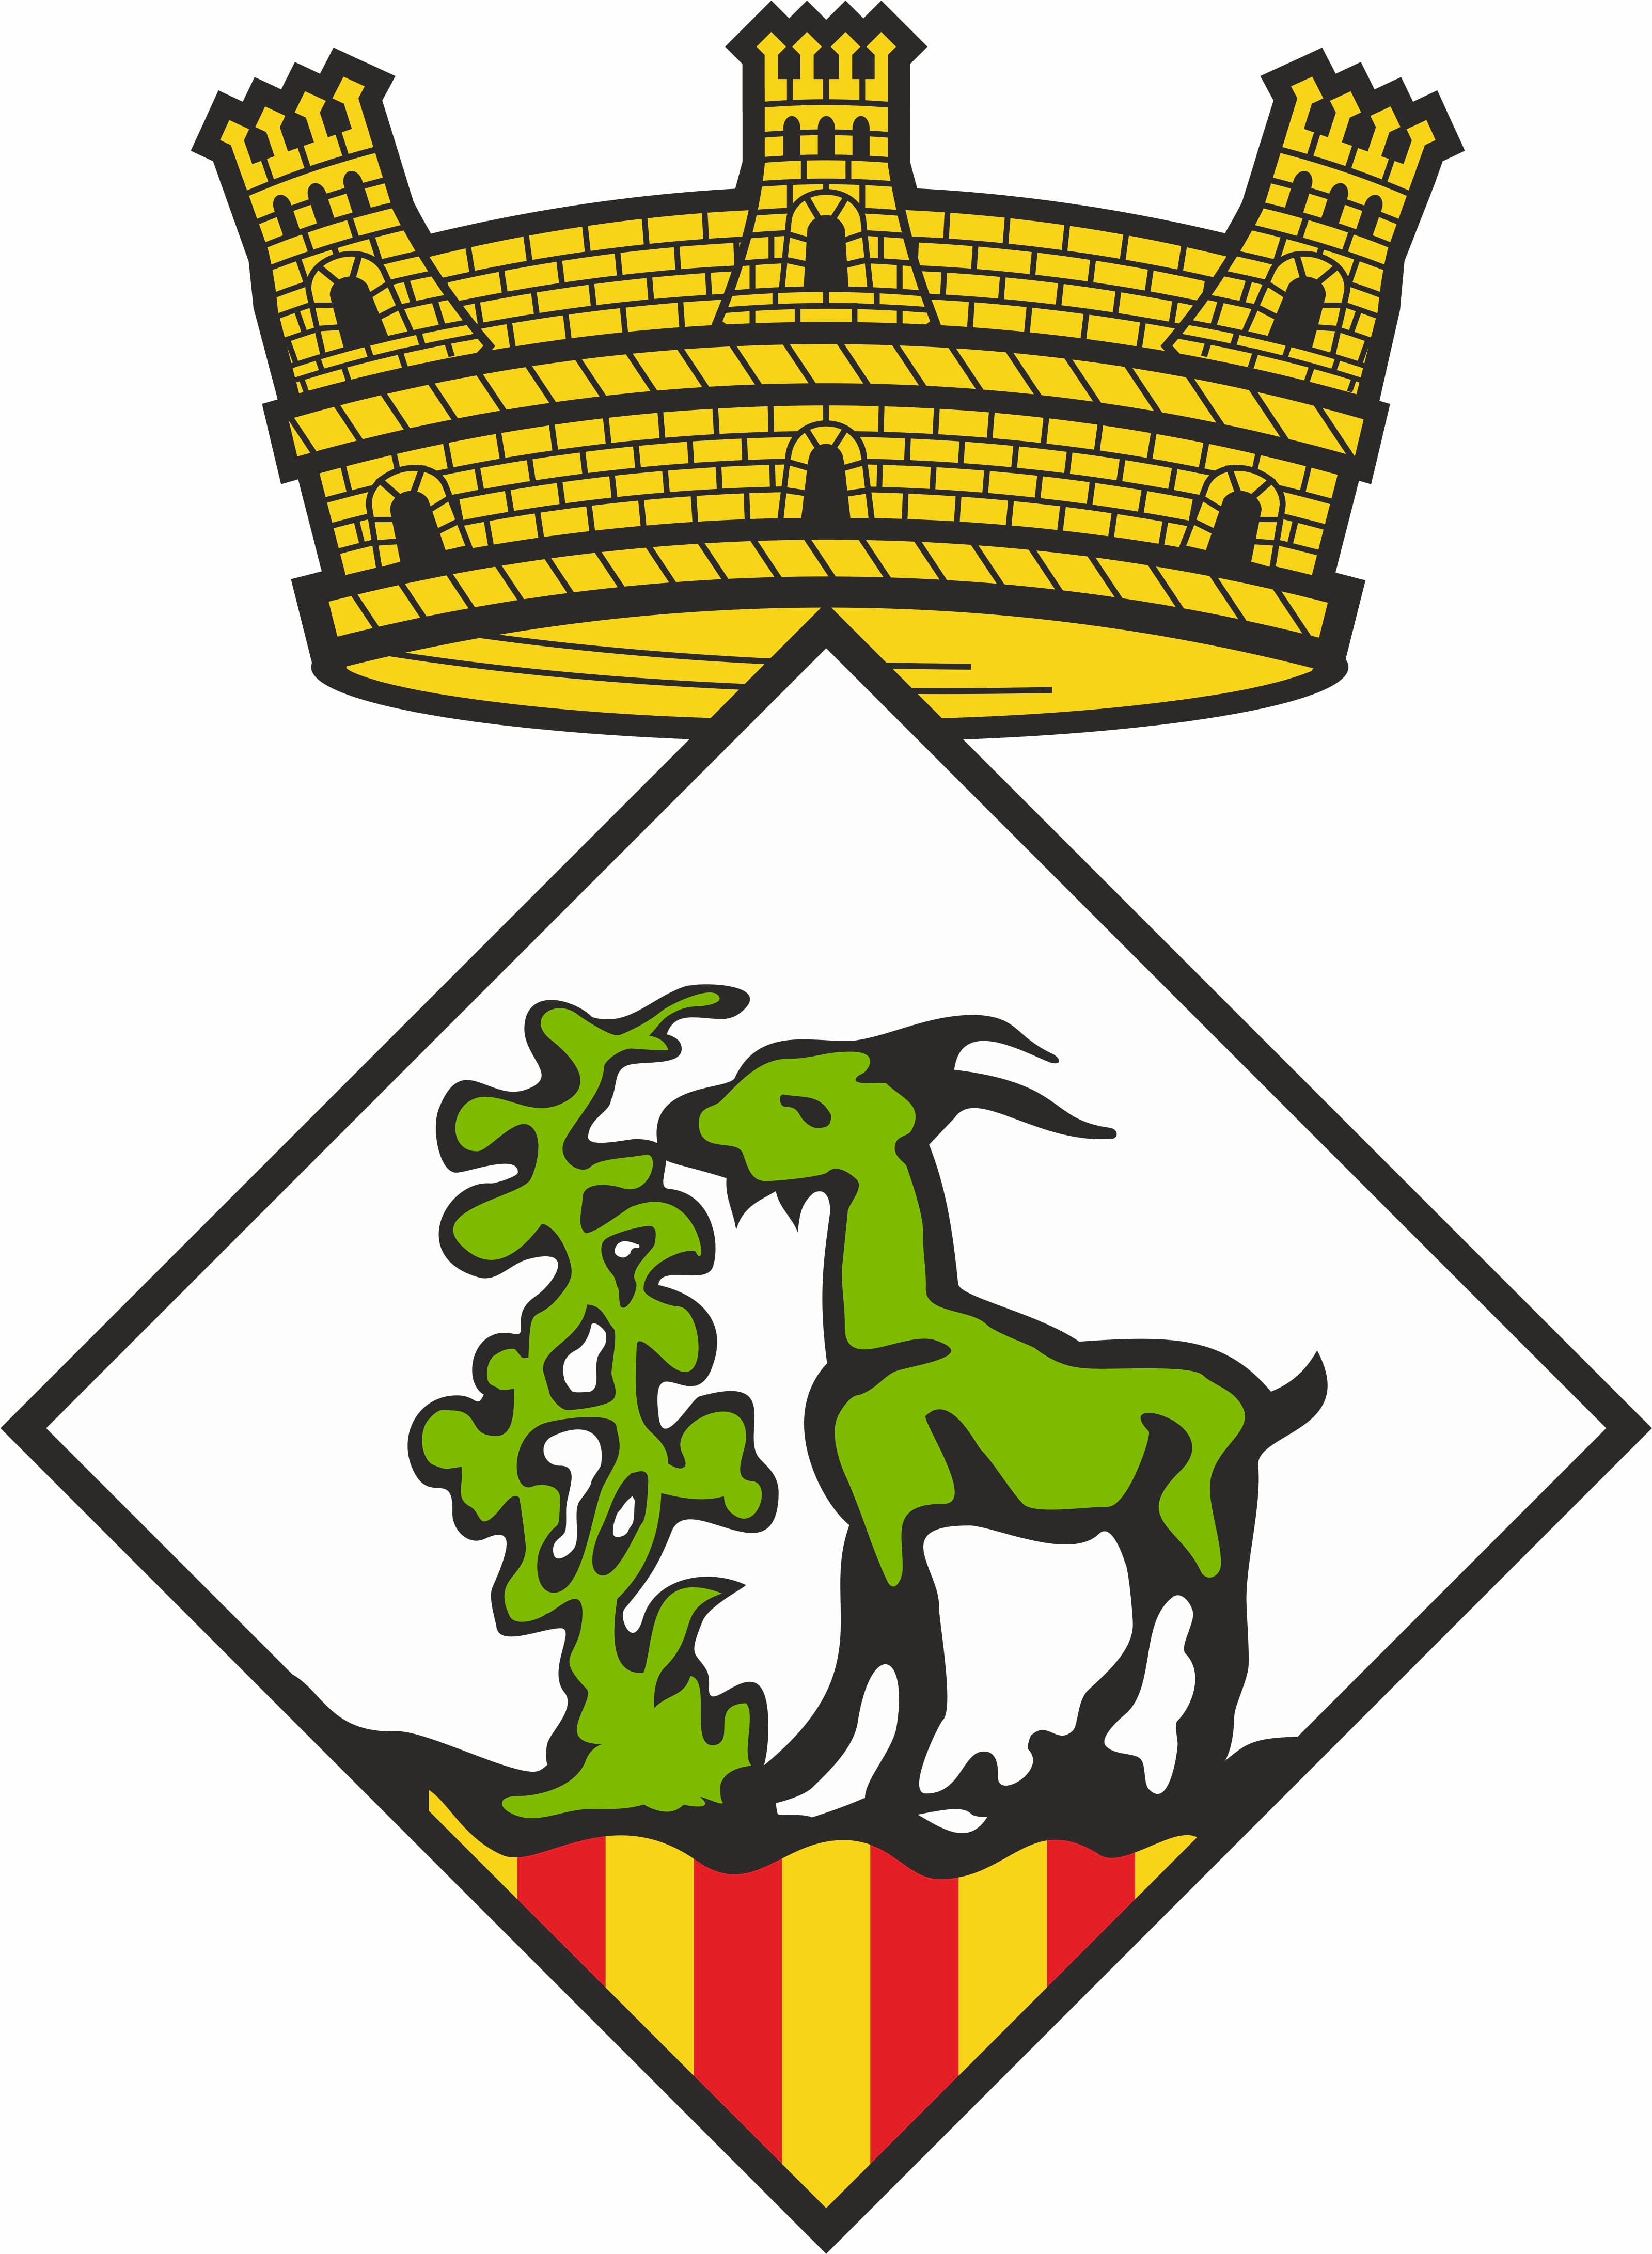 Ajuntament de Cabrera d'Anoia